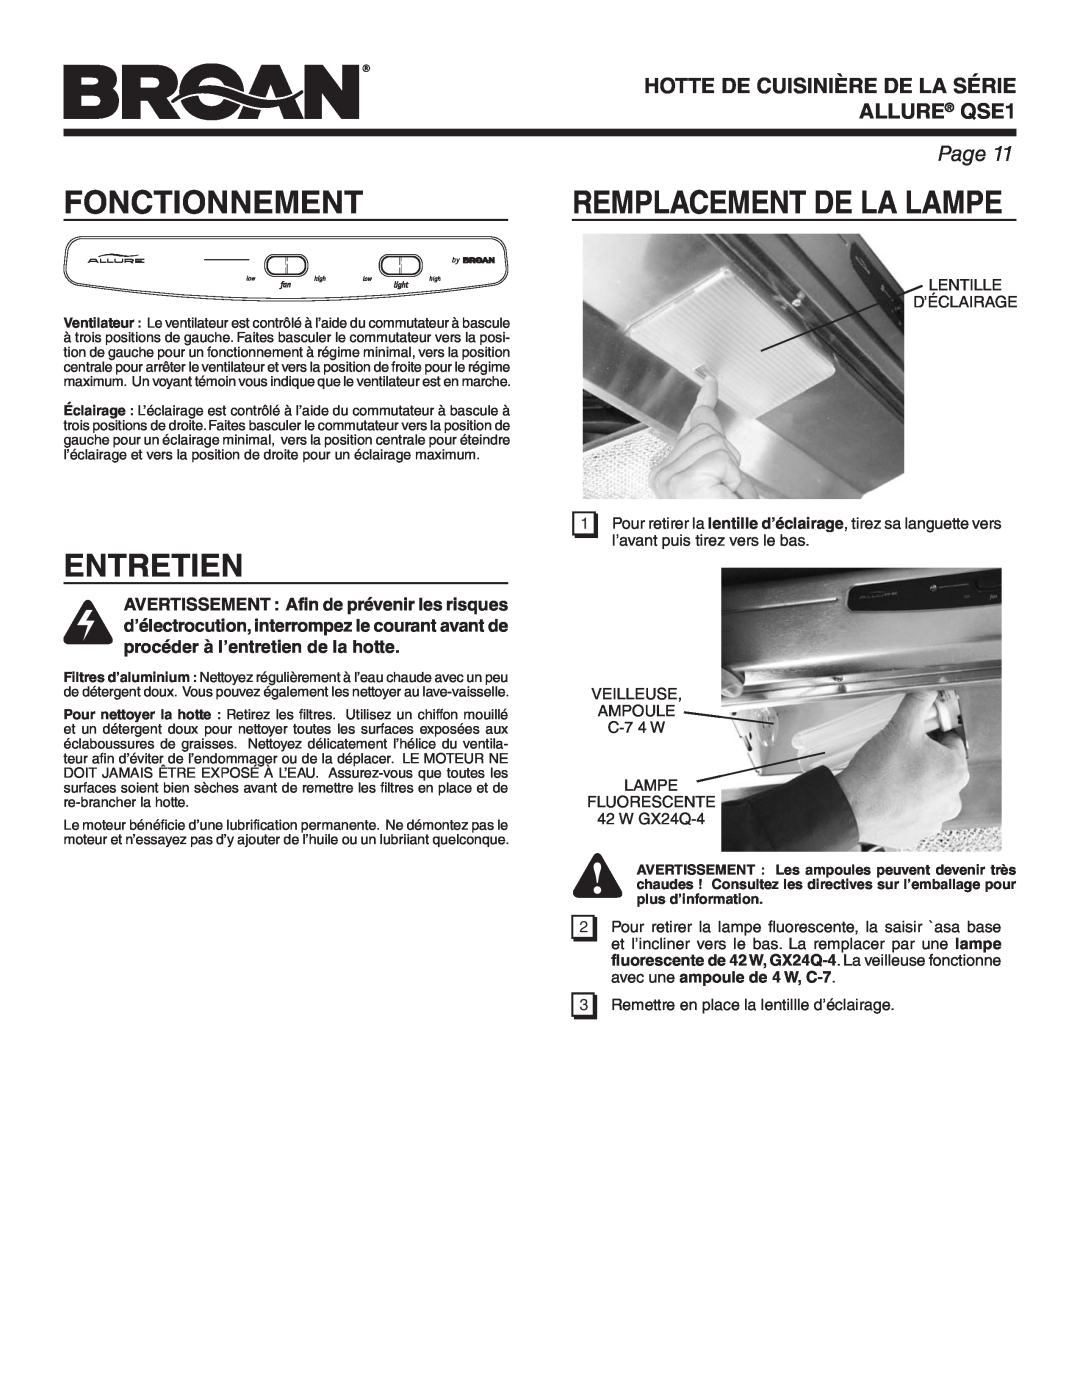 Broan warranty Fonctionnement, Entretien, Remplacement De La Lampe, HOTTE DE CUISINIÈRE DE LA SÉRIE ALLURE QSE1, Page 